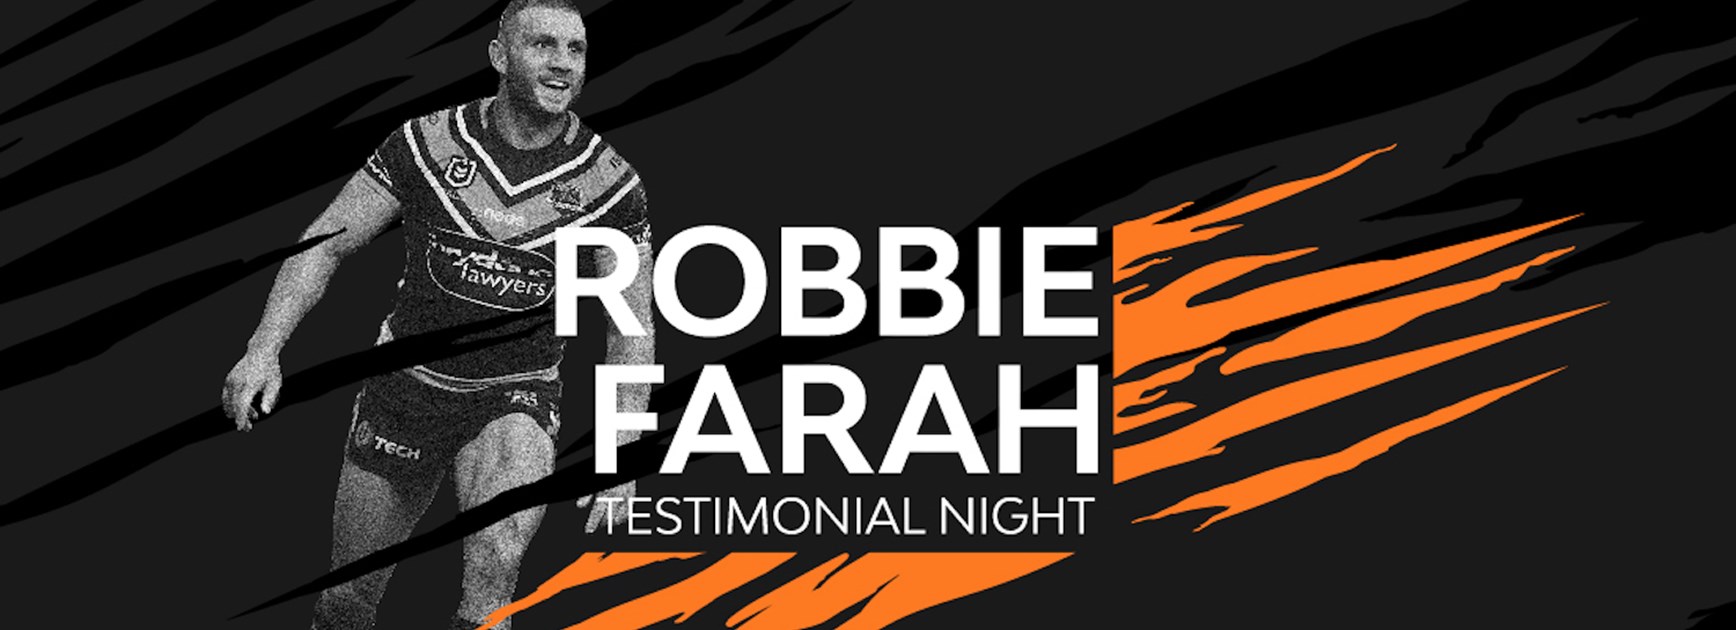 Celebrate Robbie Farah's Testimonial Night